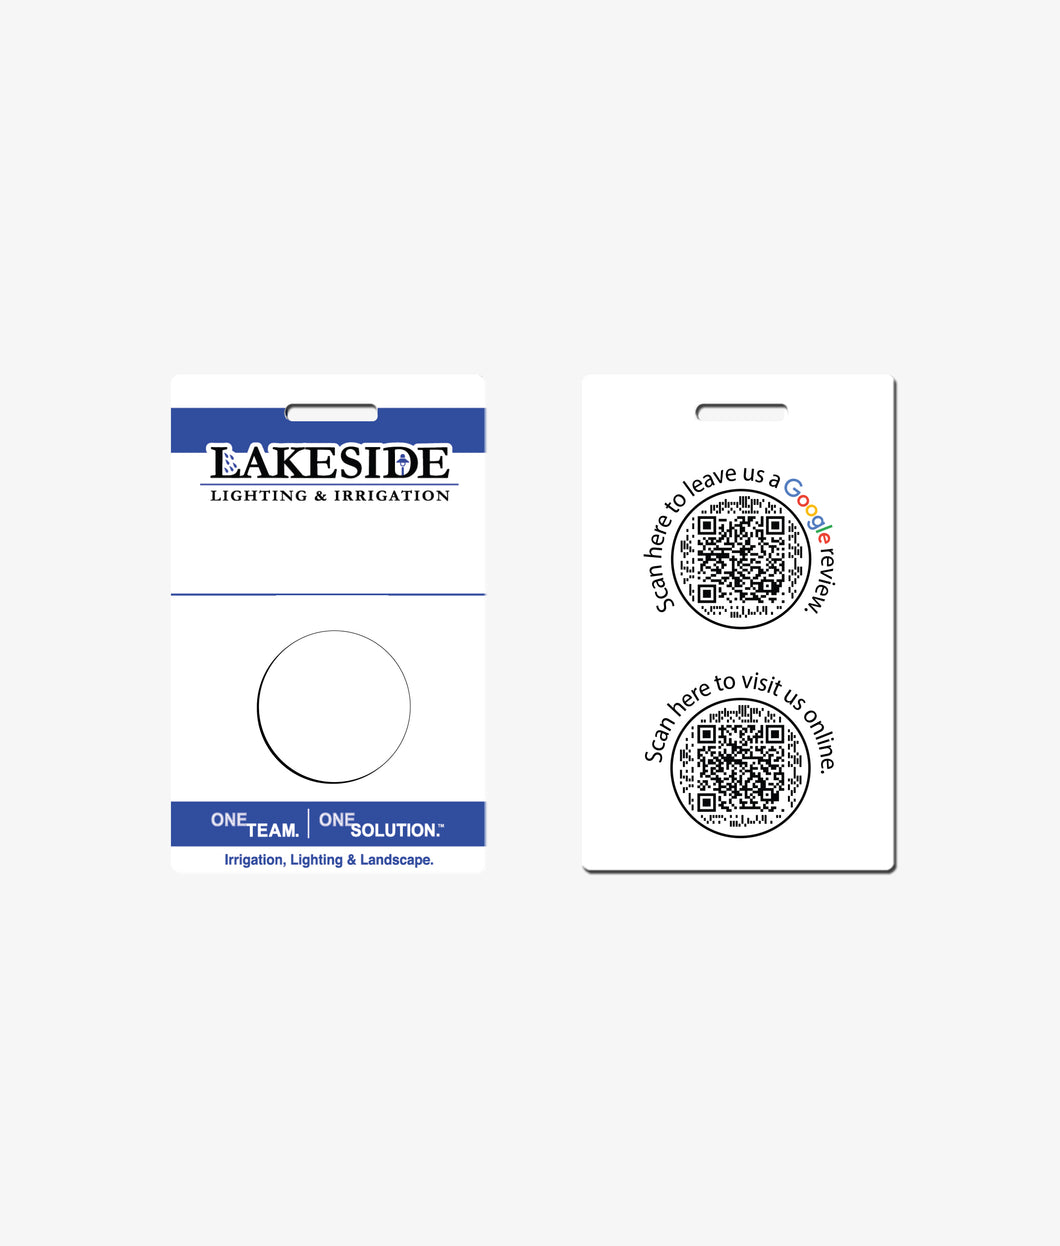 Lakeside Lighting - BadgeSmith